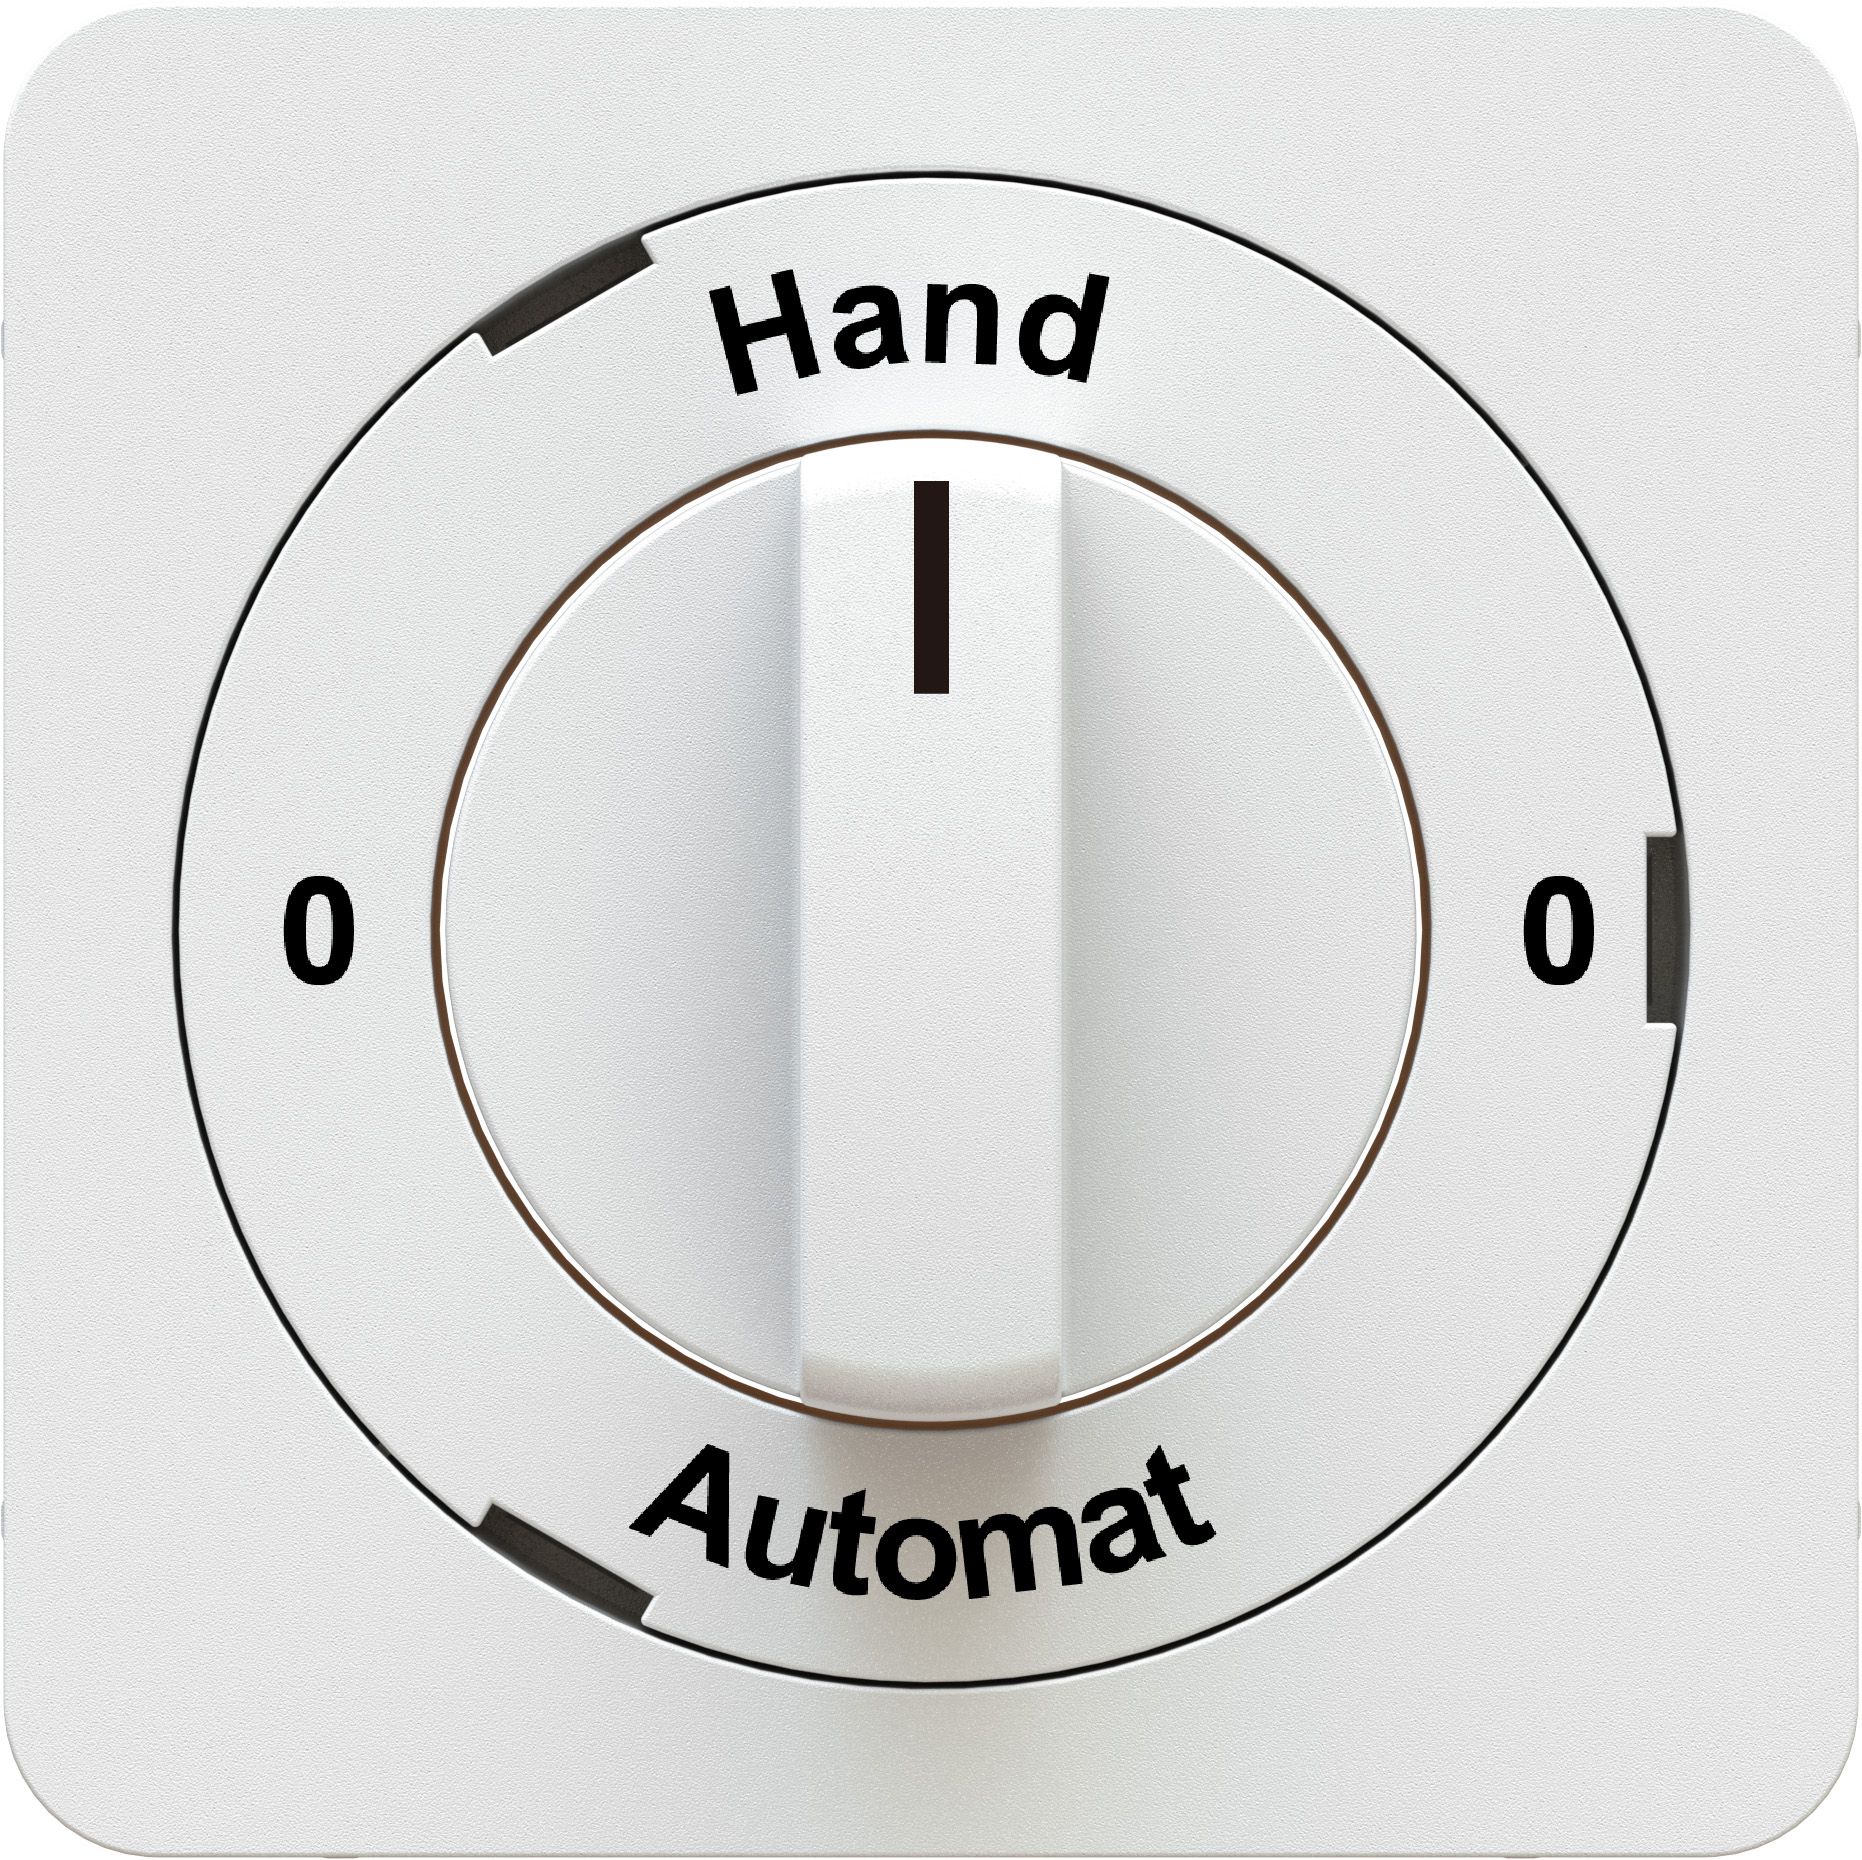 Dreh-/Schlüsselschalter 0-Hand-0-Automat Frontplatte priamos ws